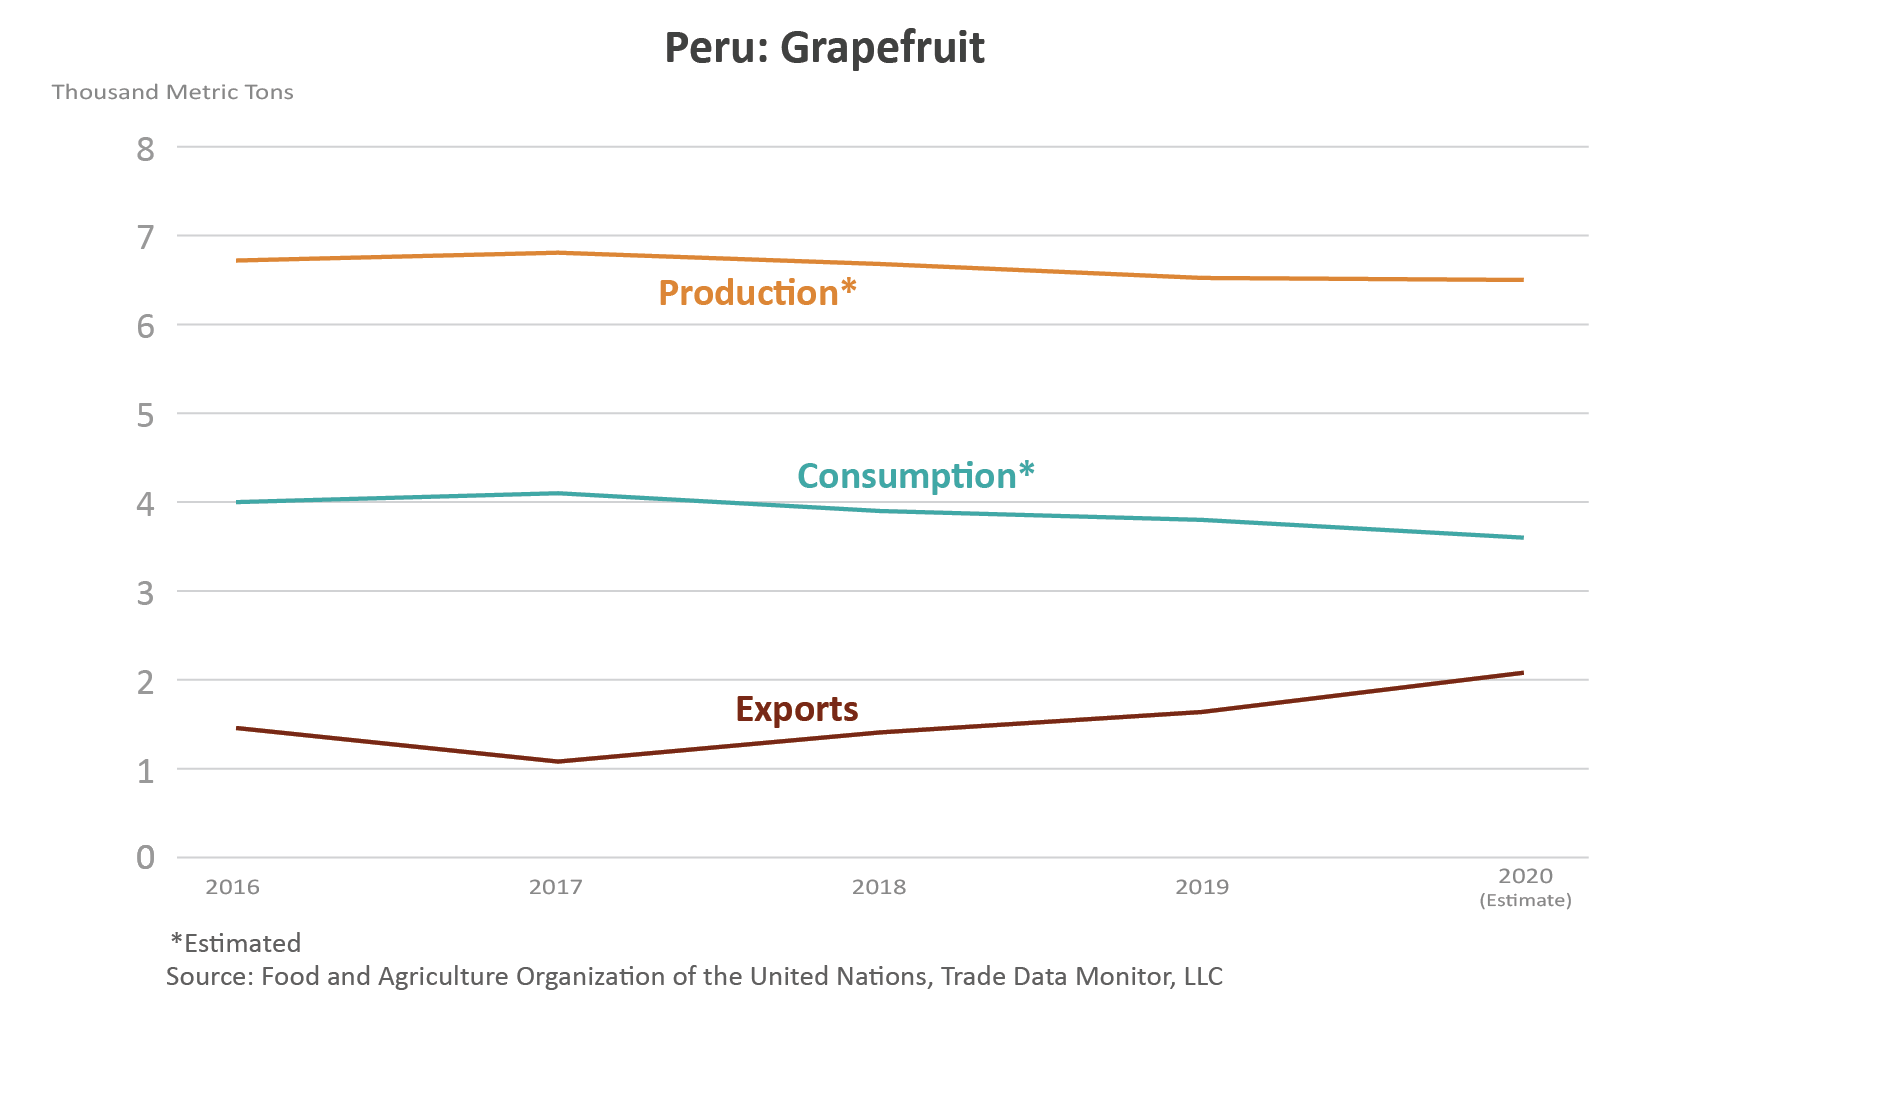 Gráfico de líneas que muestra el volumen de producción, consumo y exportaciones de las toronjas de Perú.